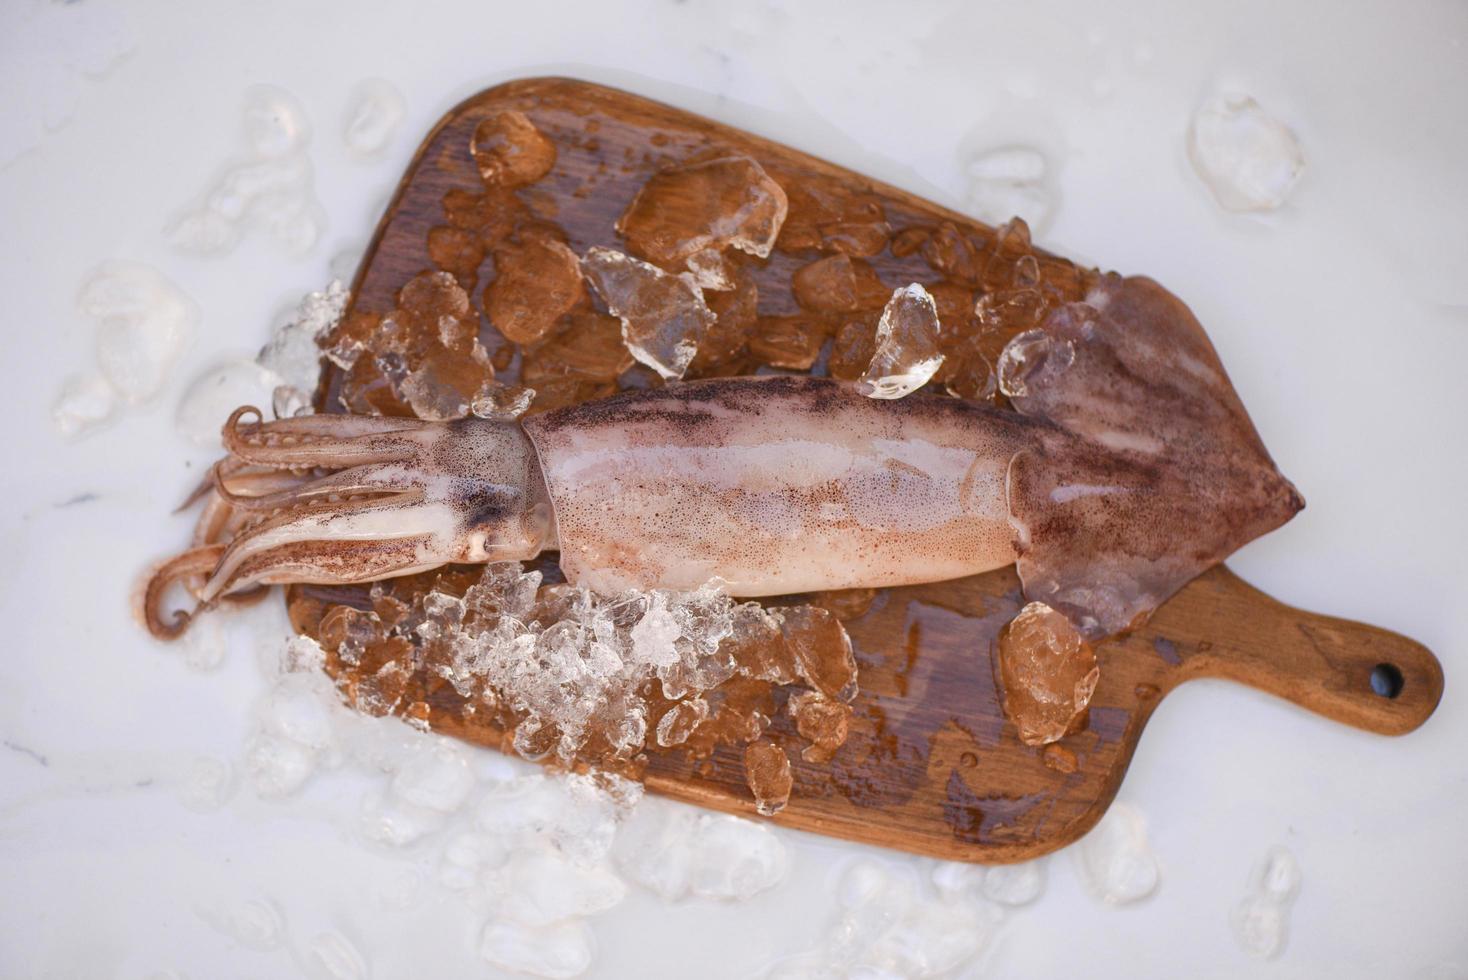 Roher Tintenfisch auf Eis mit Salatgewürzen Zitronenlimette auf dem Hintergrund des Holzschneidebretts, frische Tintenfische oder Tintenfische für gekochte Speisen im Restaurant oder auf dem Fischmarkt foto